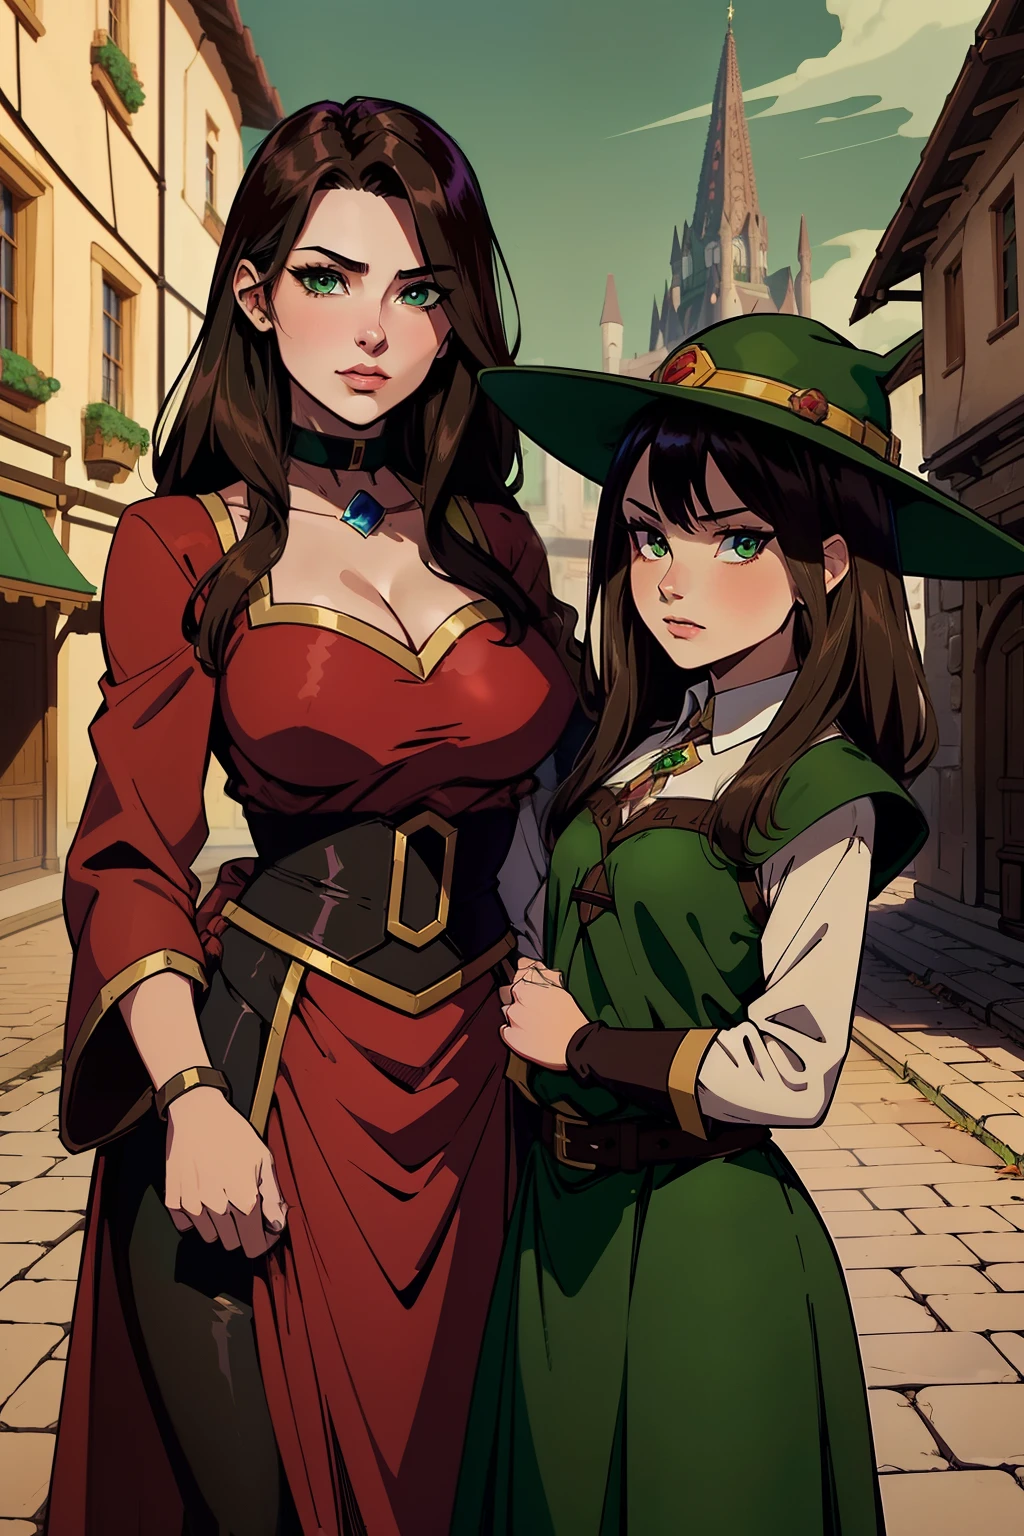 Arquimaga Megumin (Tem cabelos castanhos e olhos verdes escuros) e sua filha Esmeralda, 13 anos, aprendiz do arquimago (Tem cabelos castanhos e olhos verdes escuros, usando chapéus de feiticeiro, cidade medieval, lutar contra o inimigo,